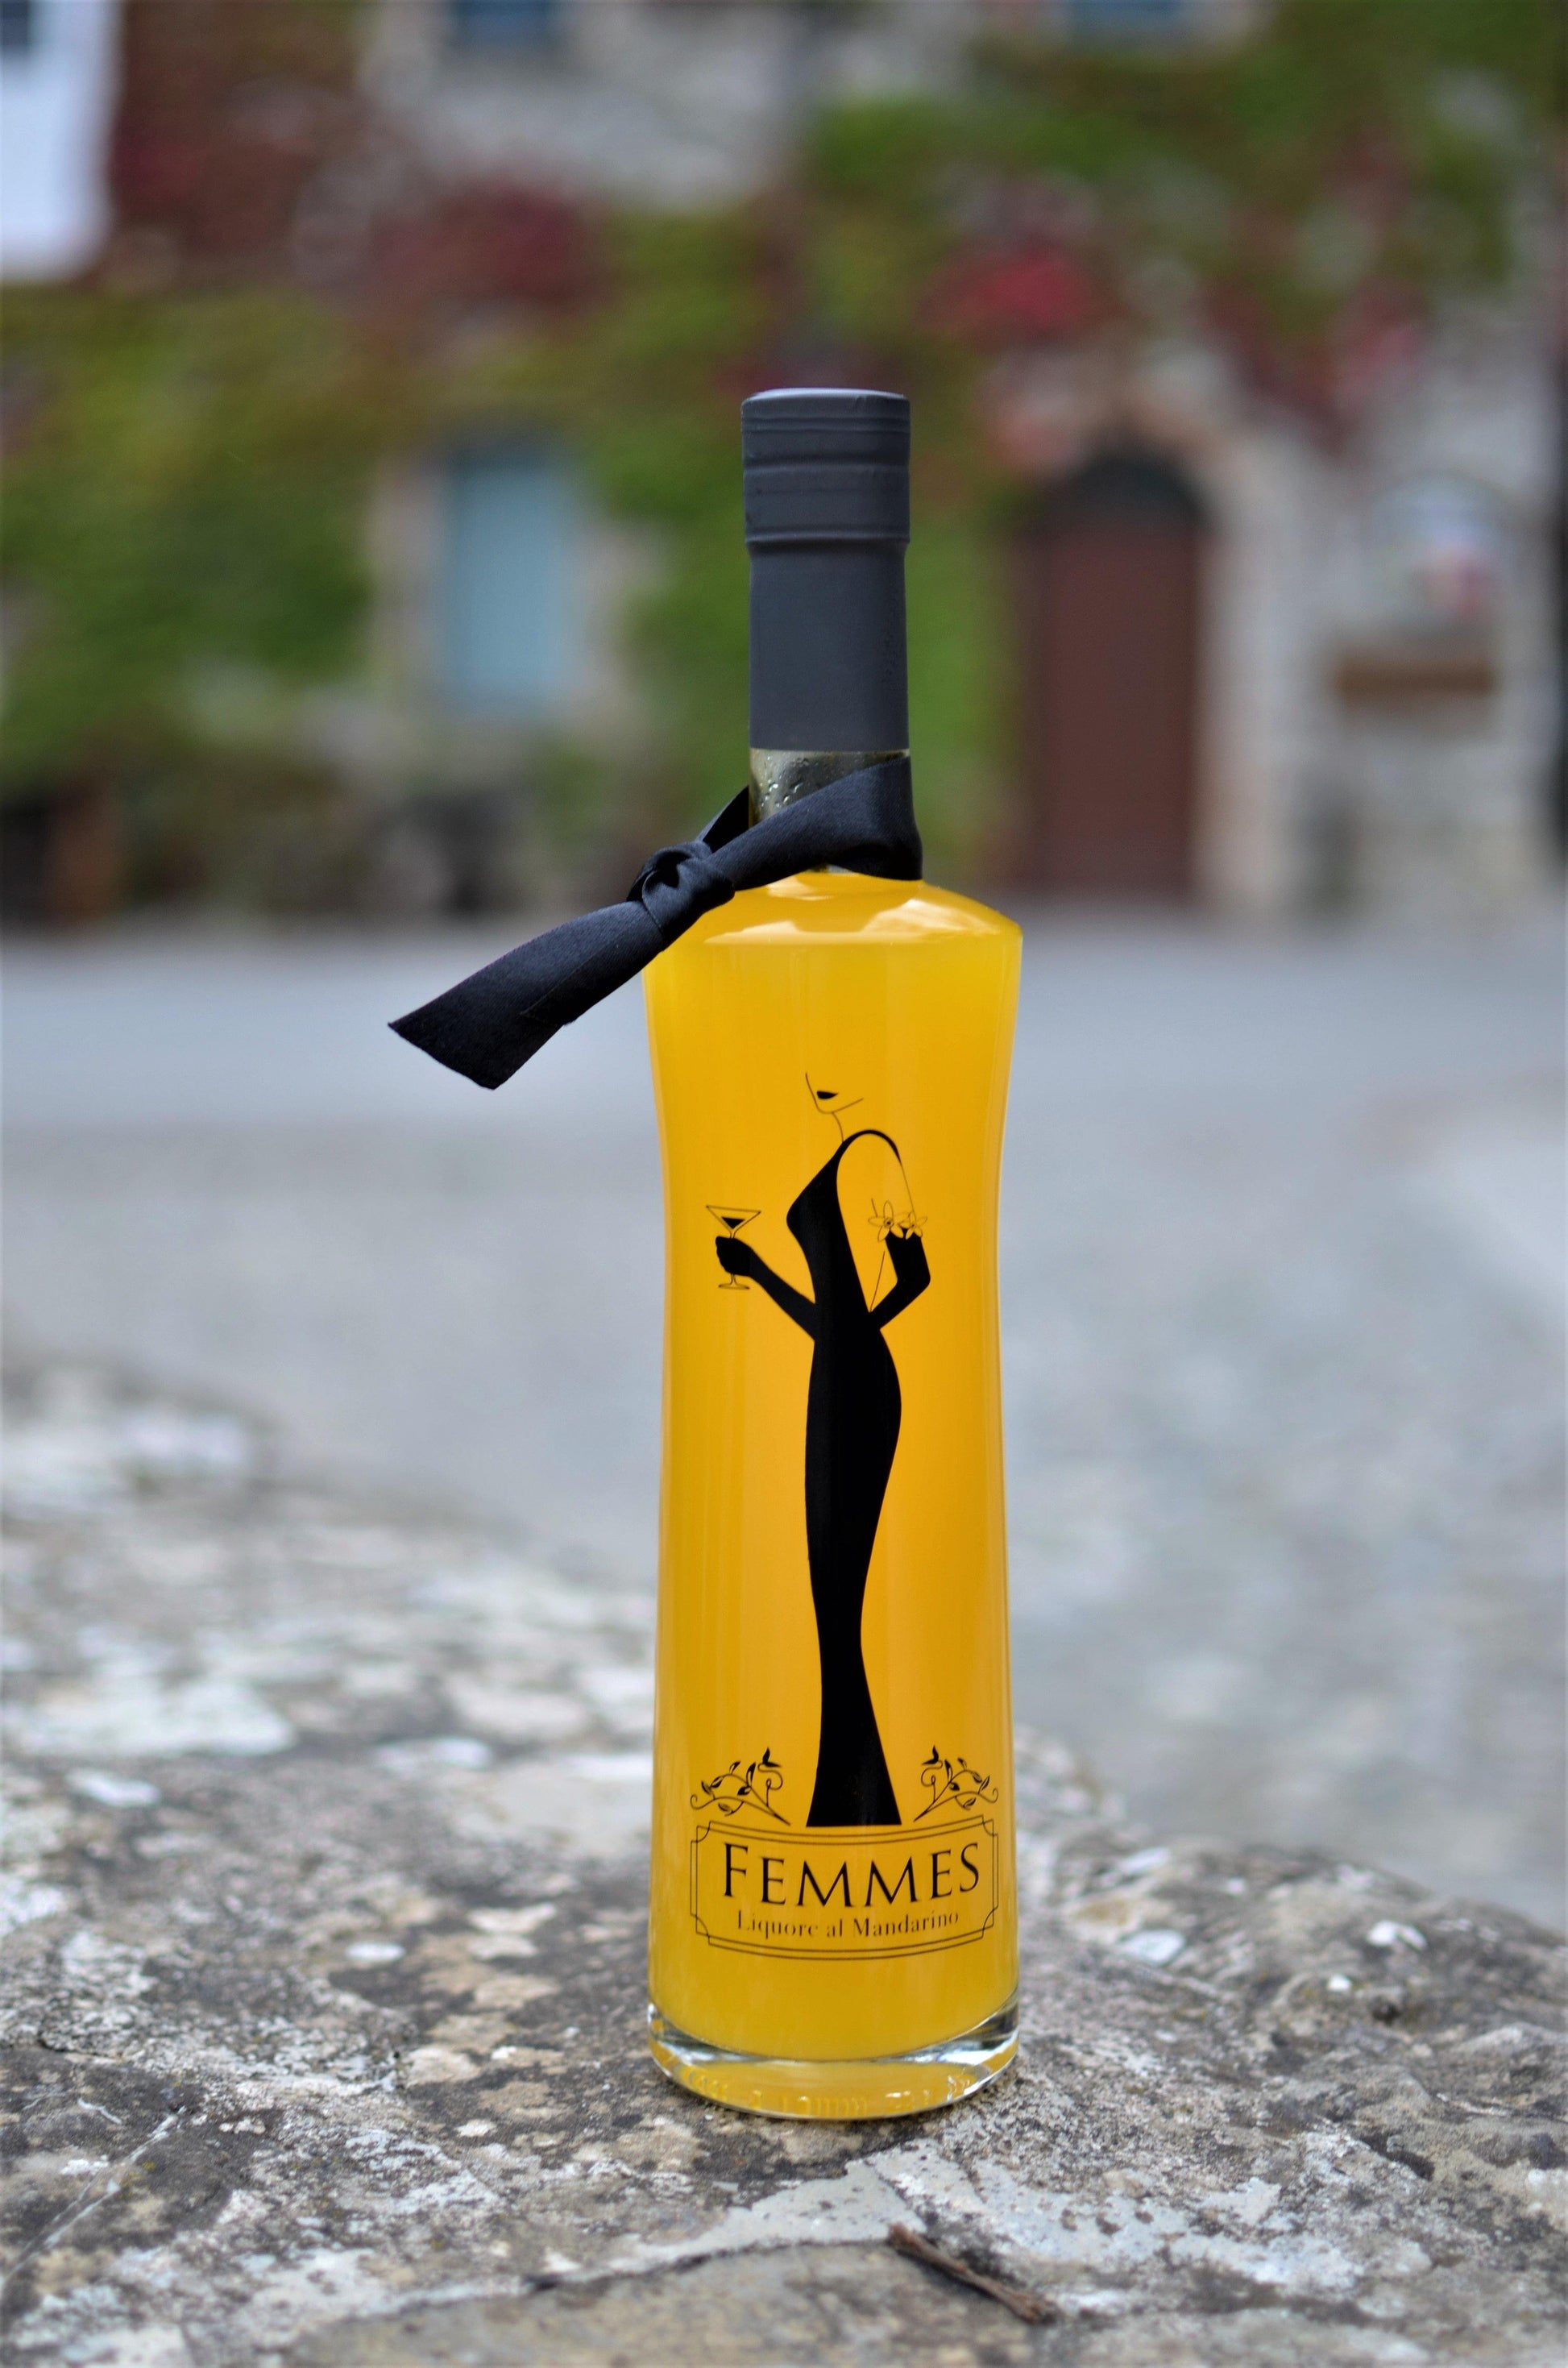 FEMMES Liquore al mandarino - 3 Bottiglie - I migliori prodotti Made in Italy da Fiera Monza e Brianza SHOP - Solo 31.50€! Acquista subito su Fiera di Monza Shop!